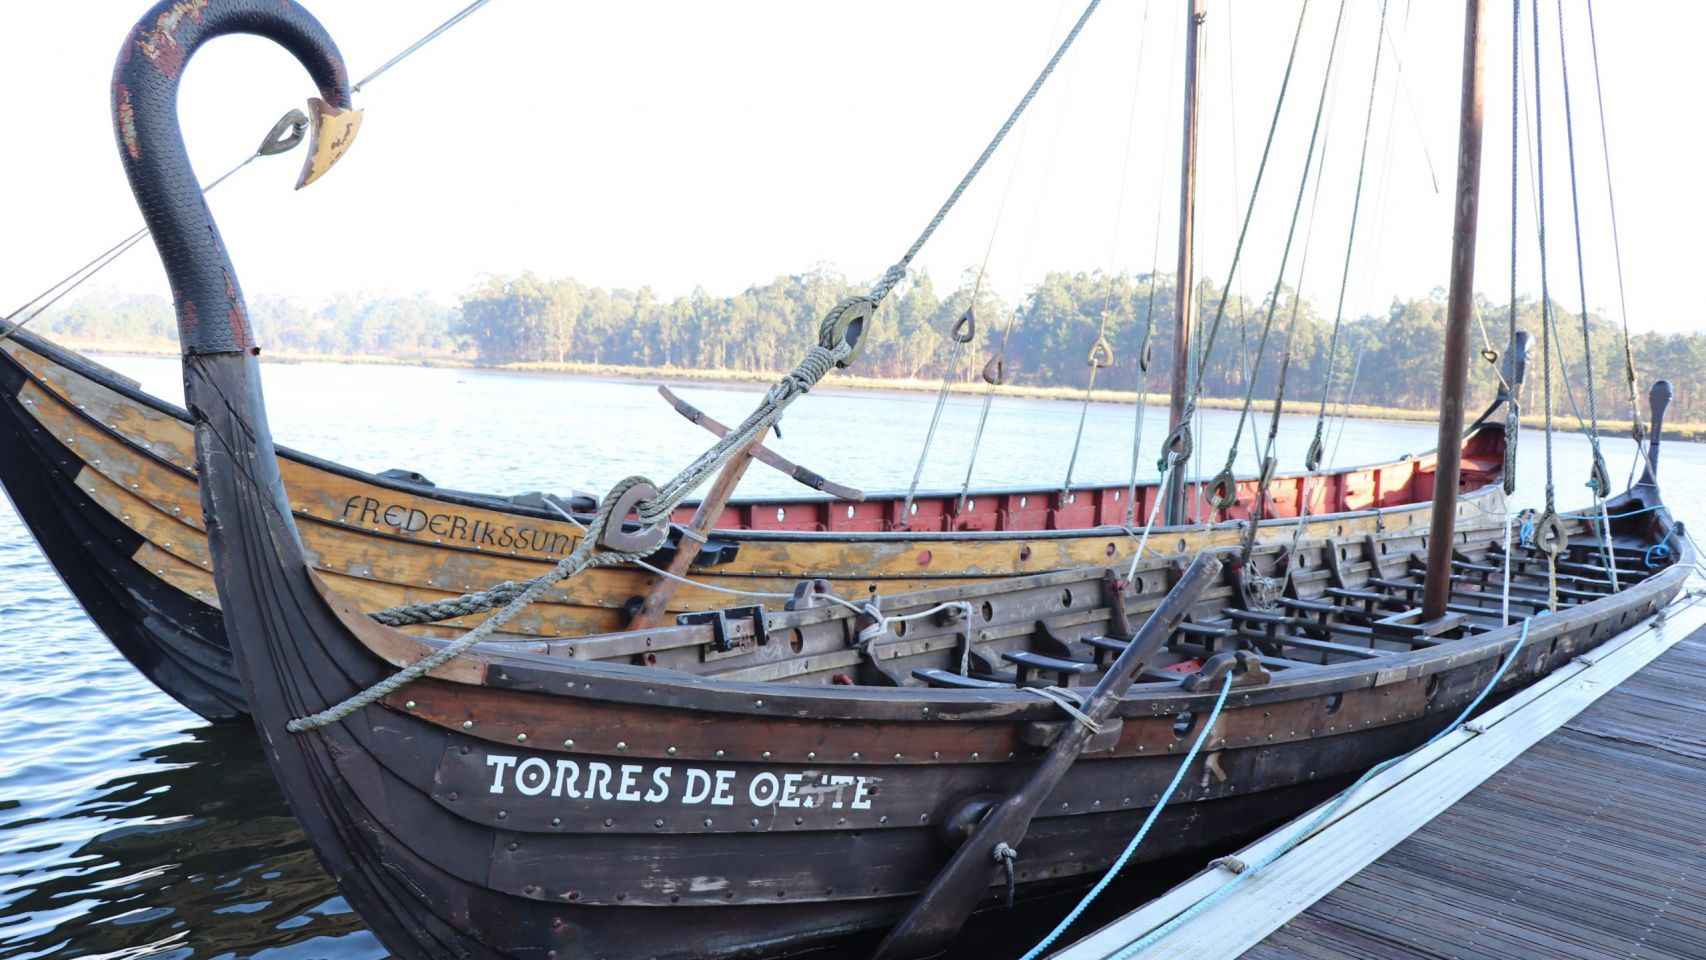 Barco vikingo 'Torres de Oeste' de Catoira.